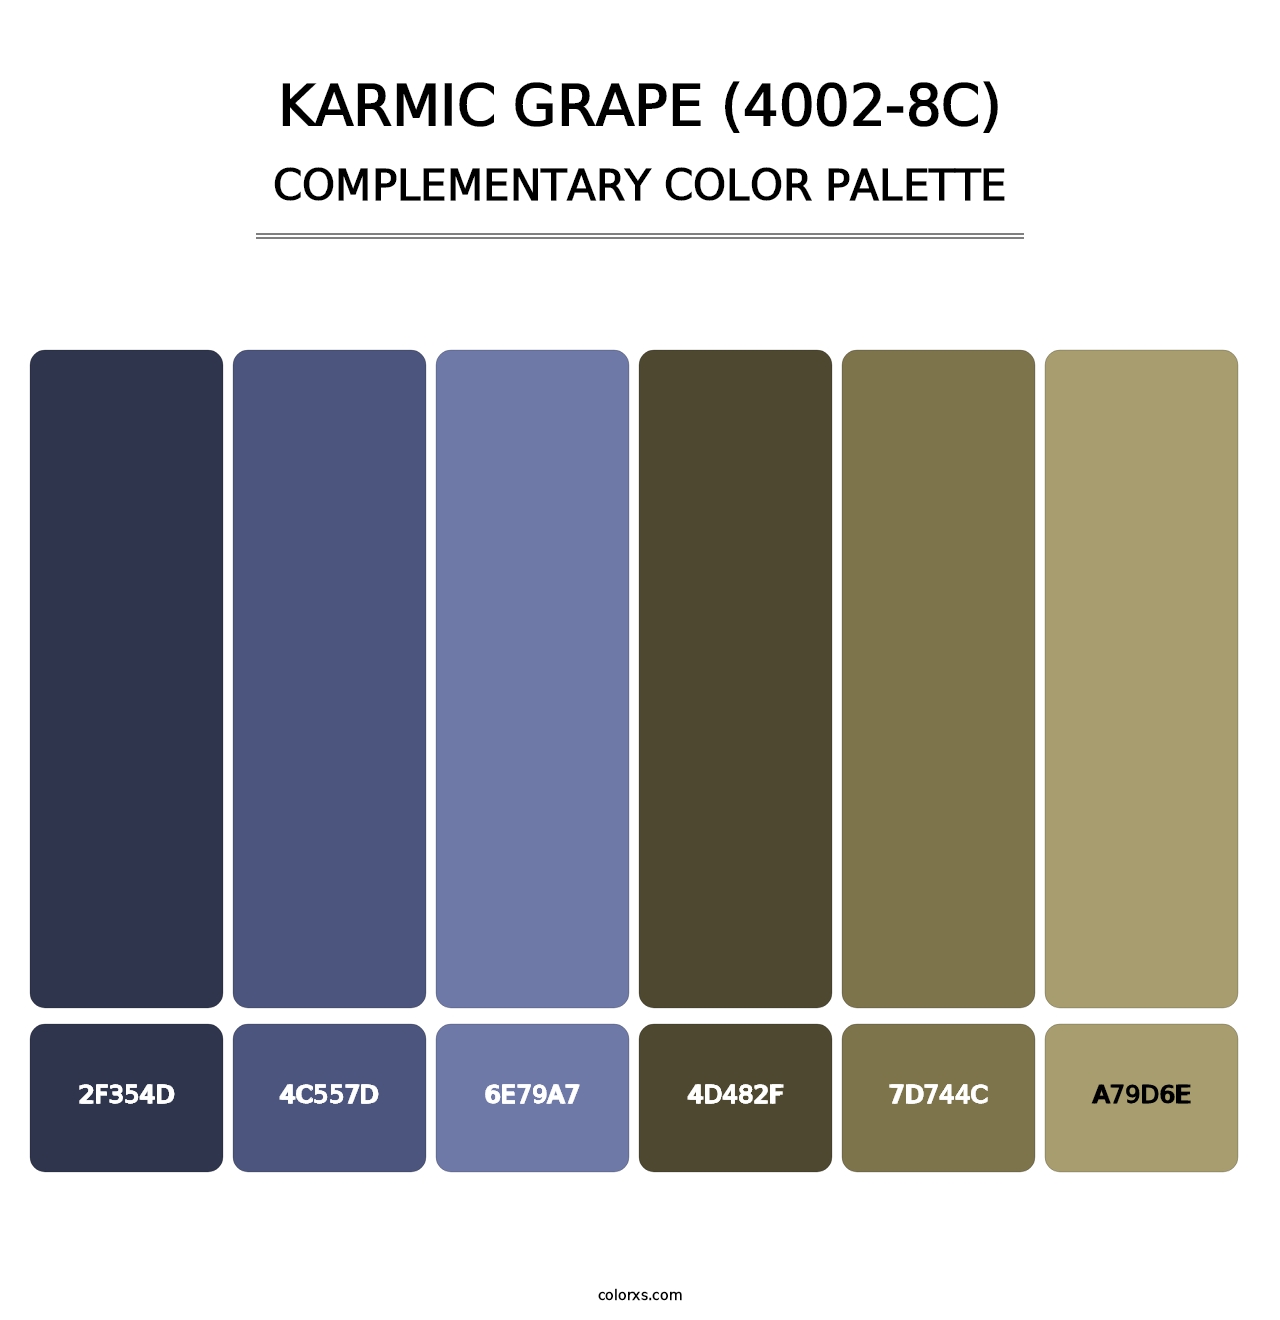 Karmic Grape (4002-8C) - Complementary Color Palette